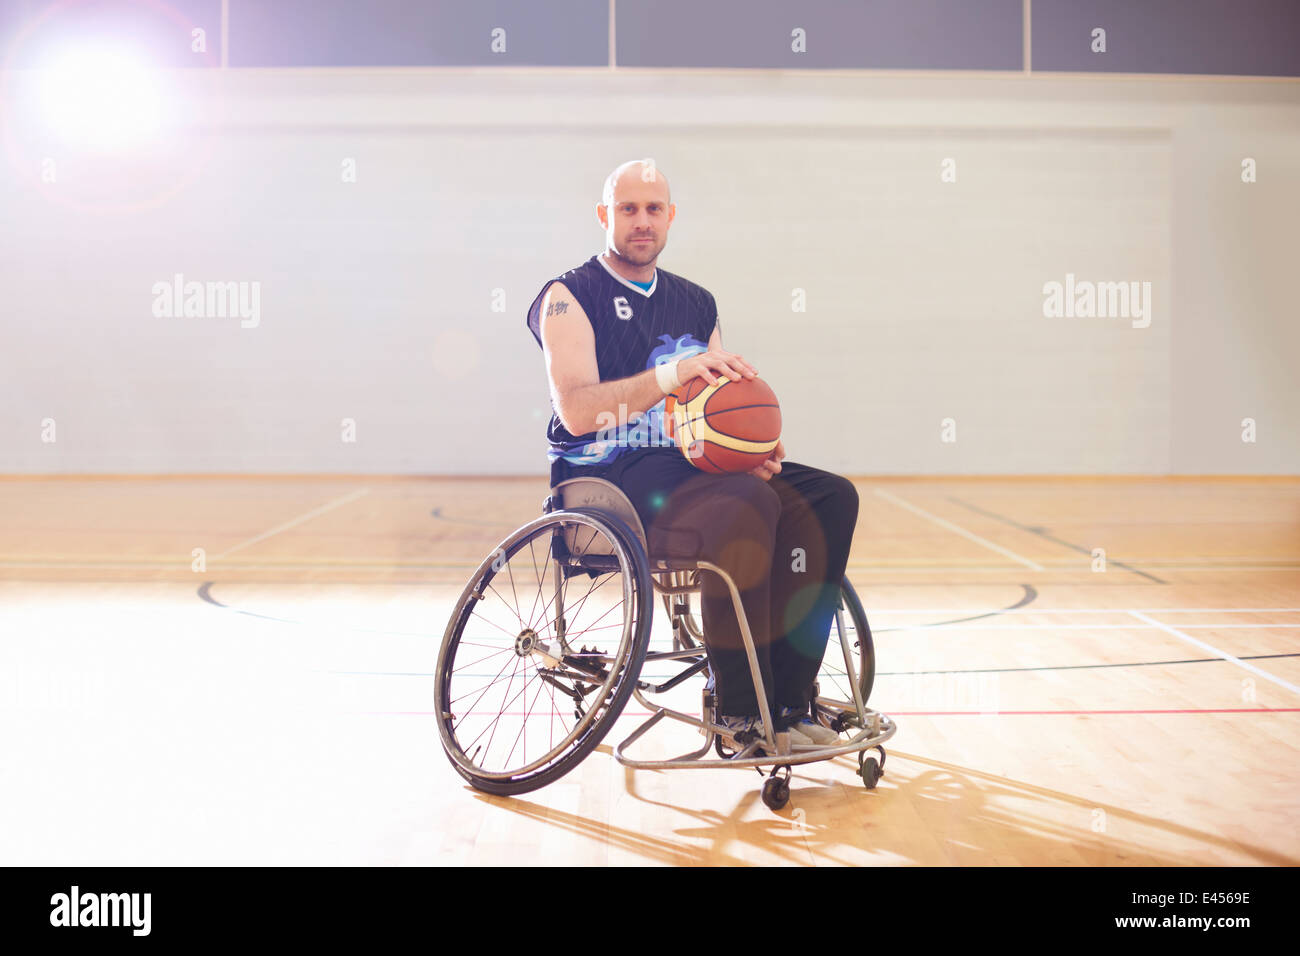 Joueur de basket-ball en fauteuil roulant holding ball Banque D'Images